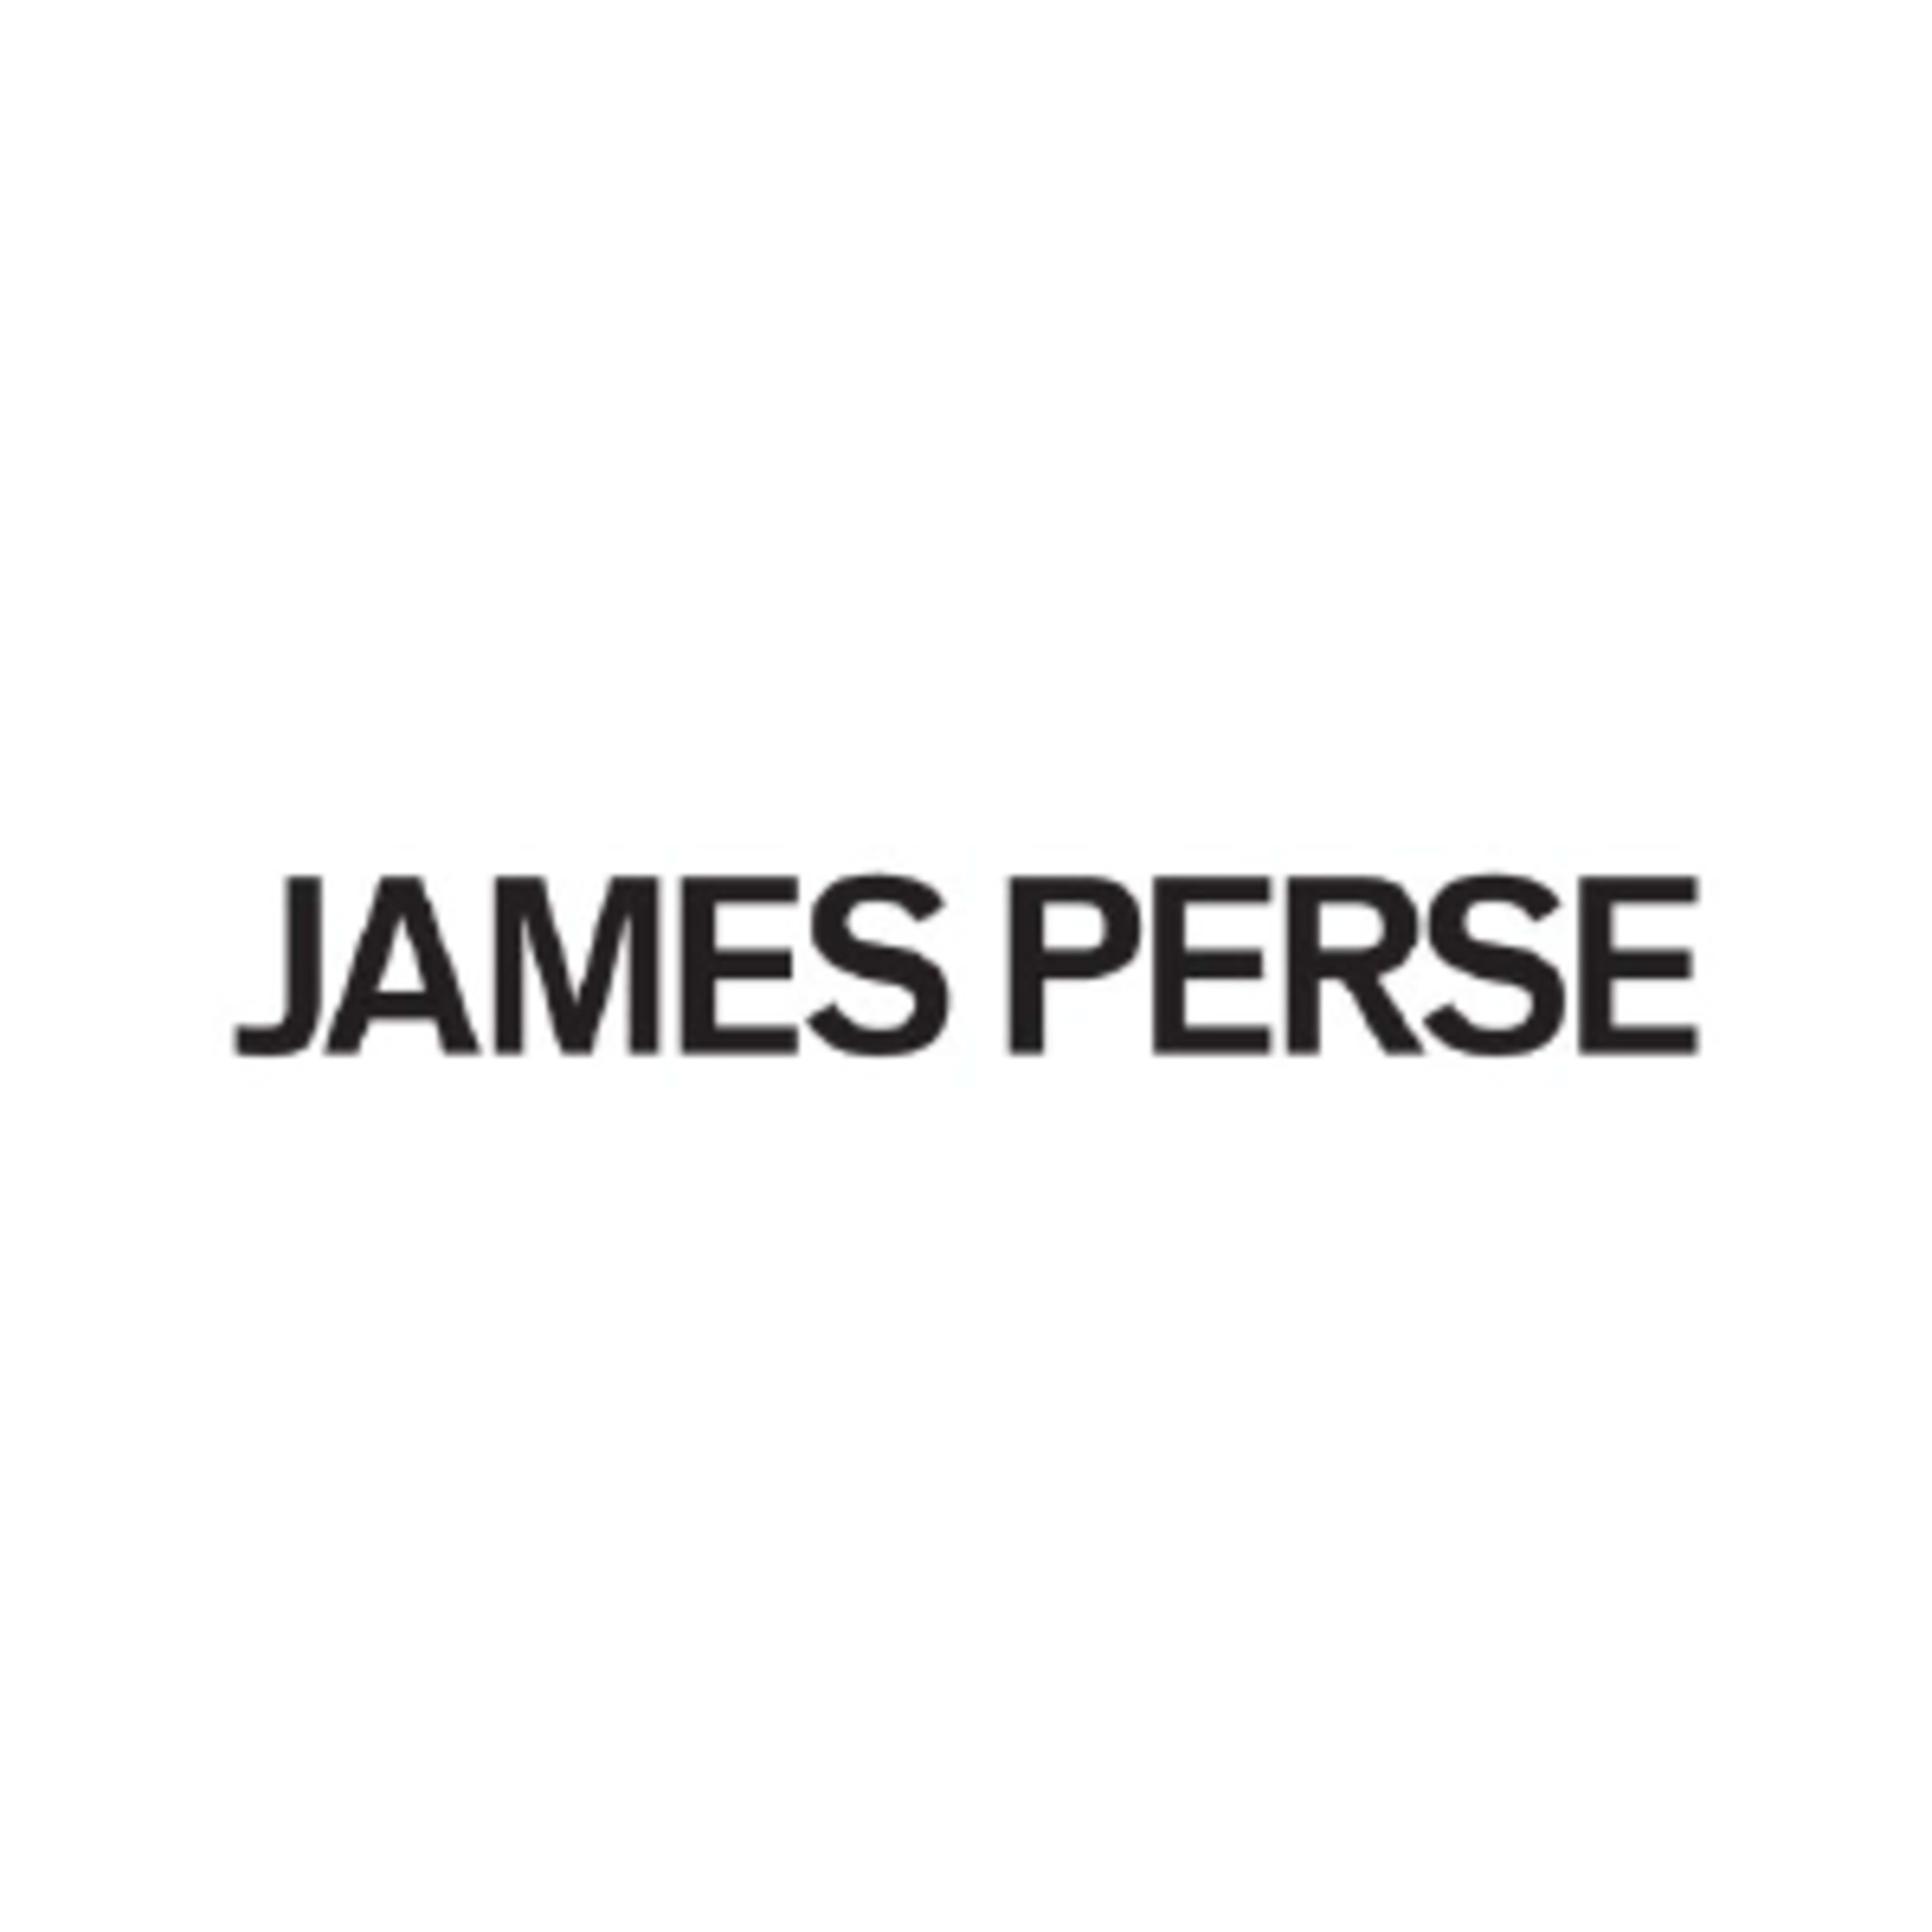 James PerseCode